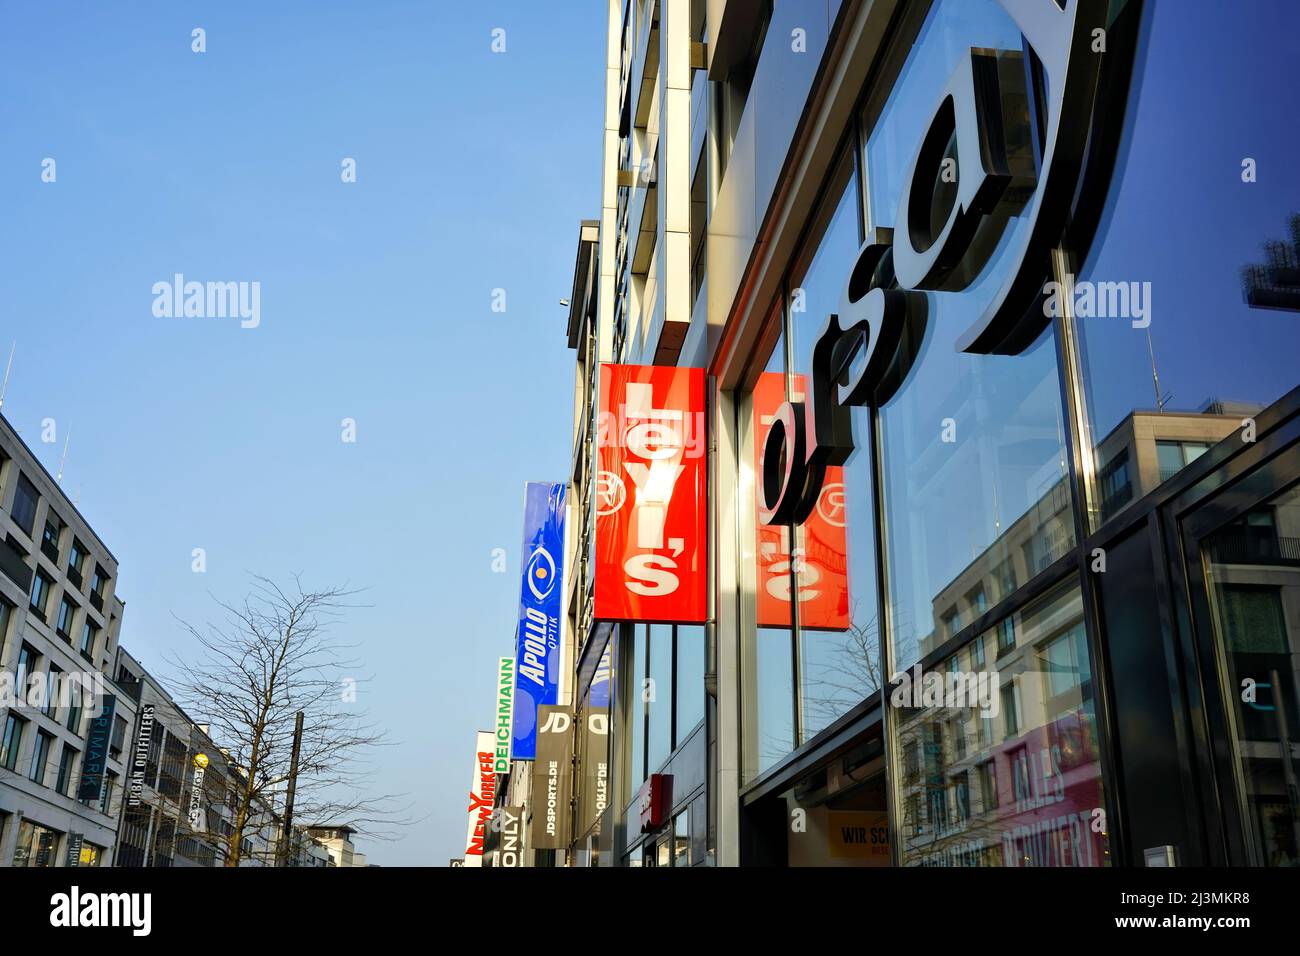 Verschiedene Store-Logos in der Schadowstraße in Düsseldorf. Die Schadowstraße ist eine der belebtesten und am meisten frequentierten Einkaufsstraßen in Deutschland. Stockfoto